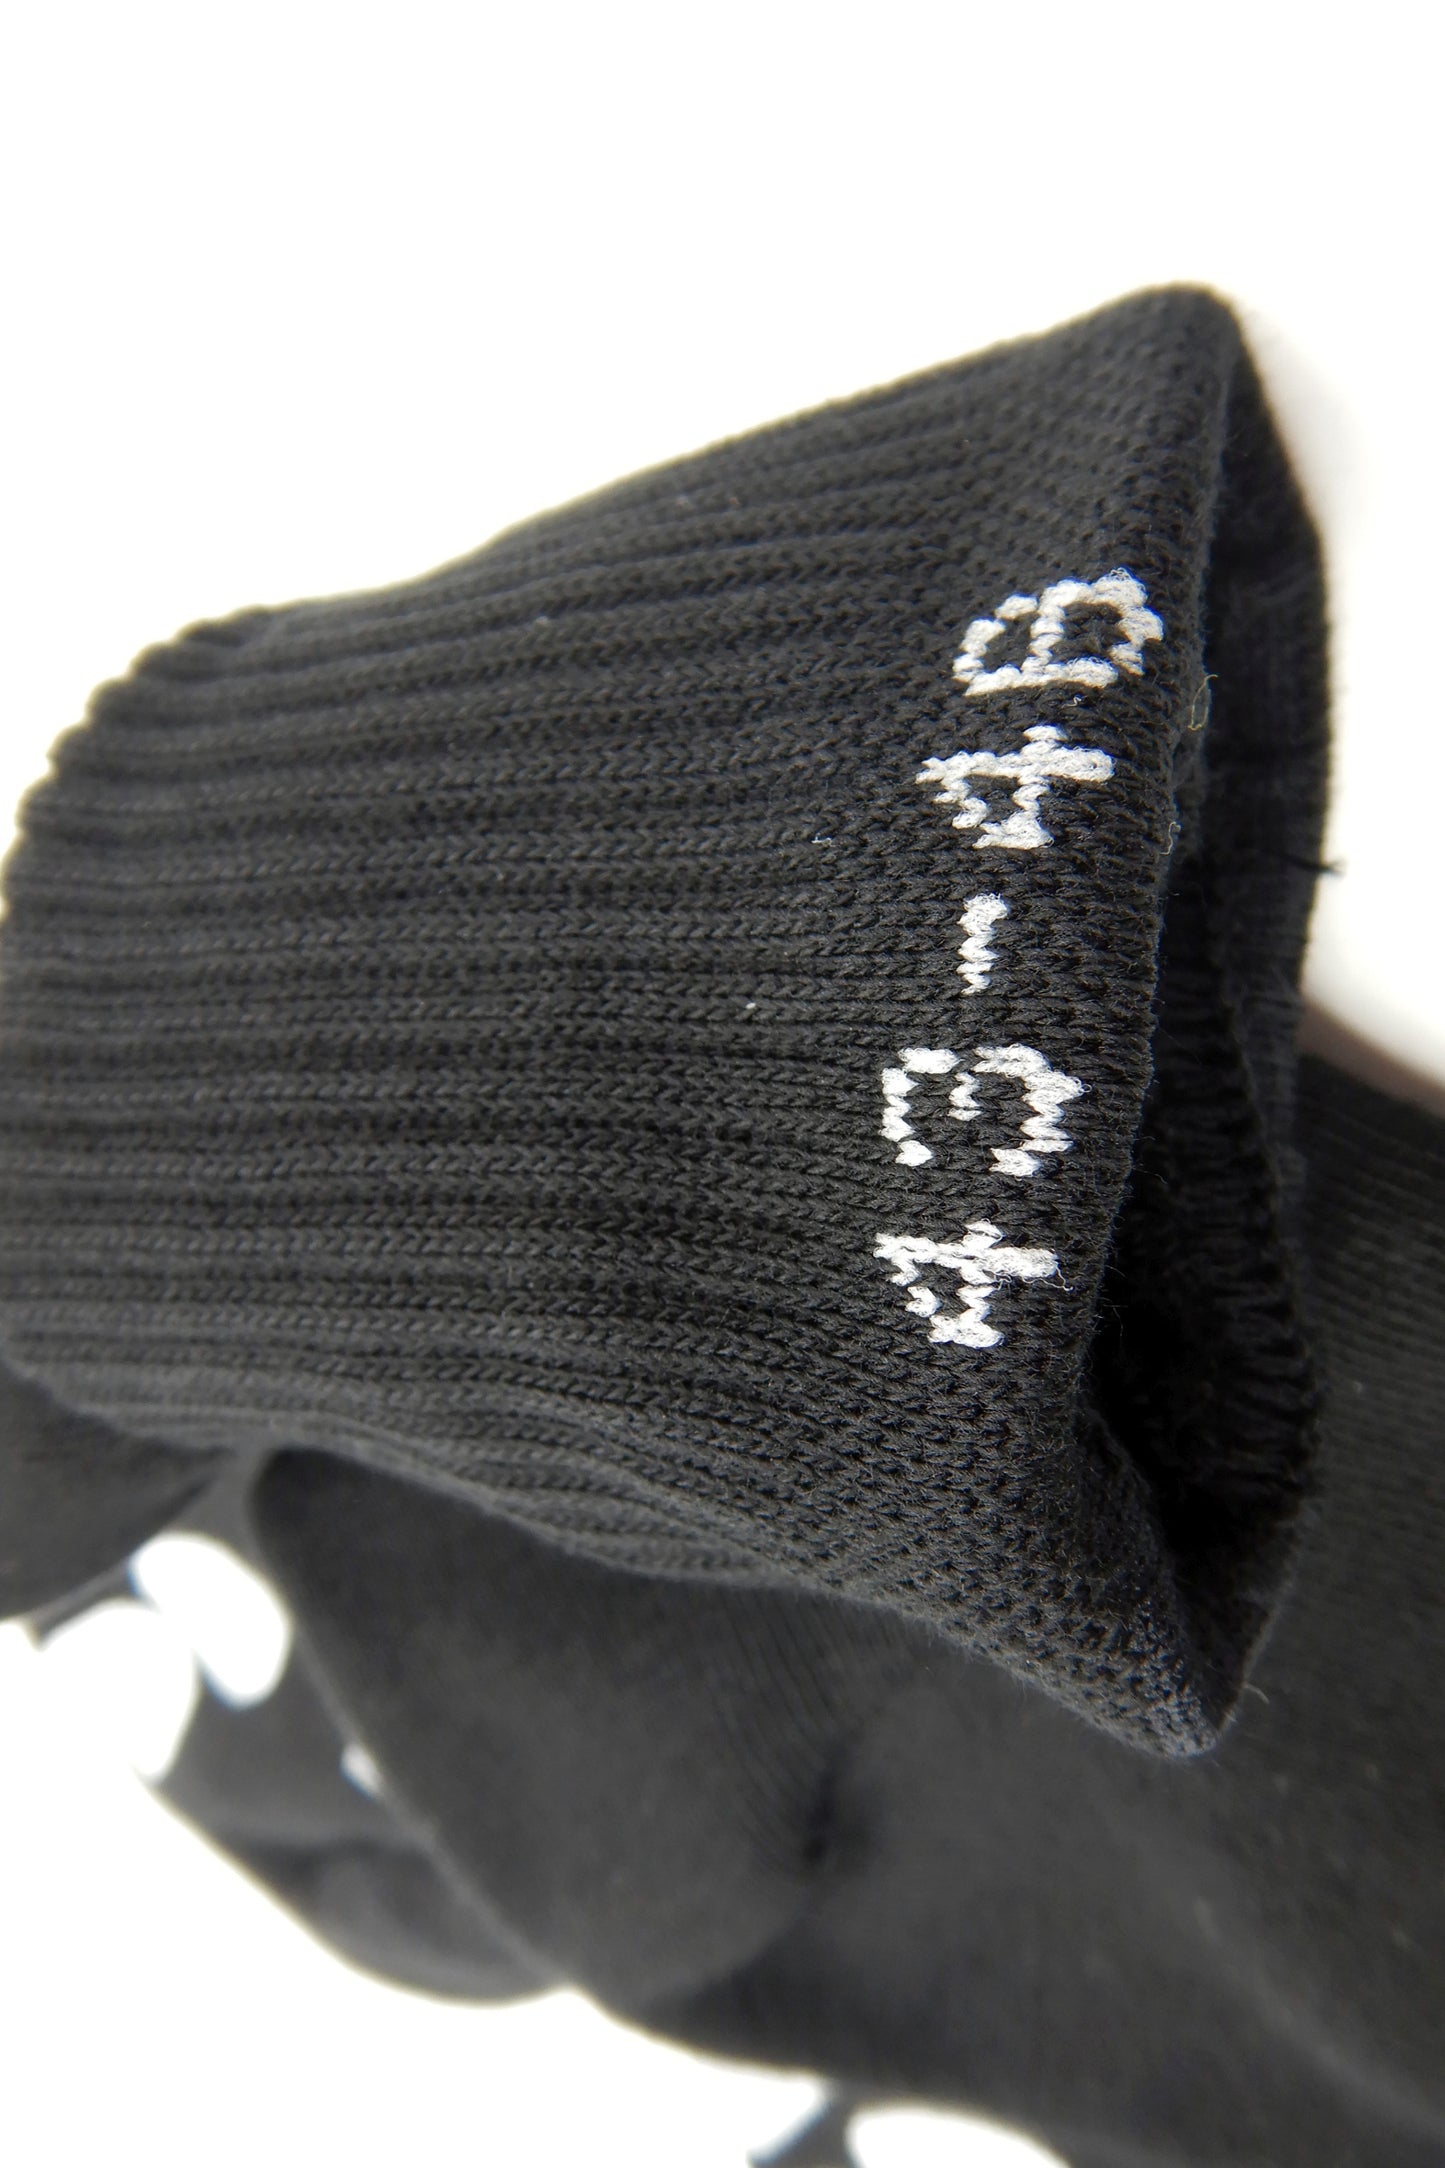 Sk8erboy® PUPPY Short Crew Socks black